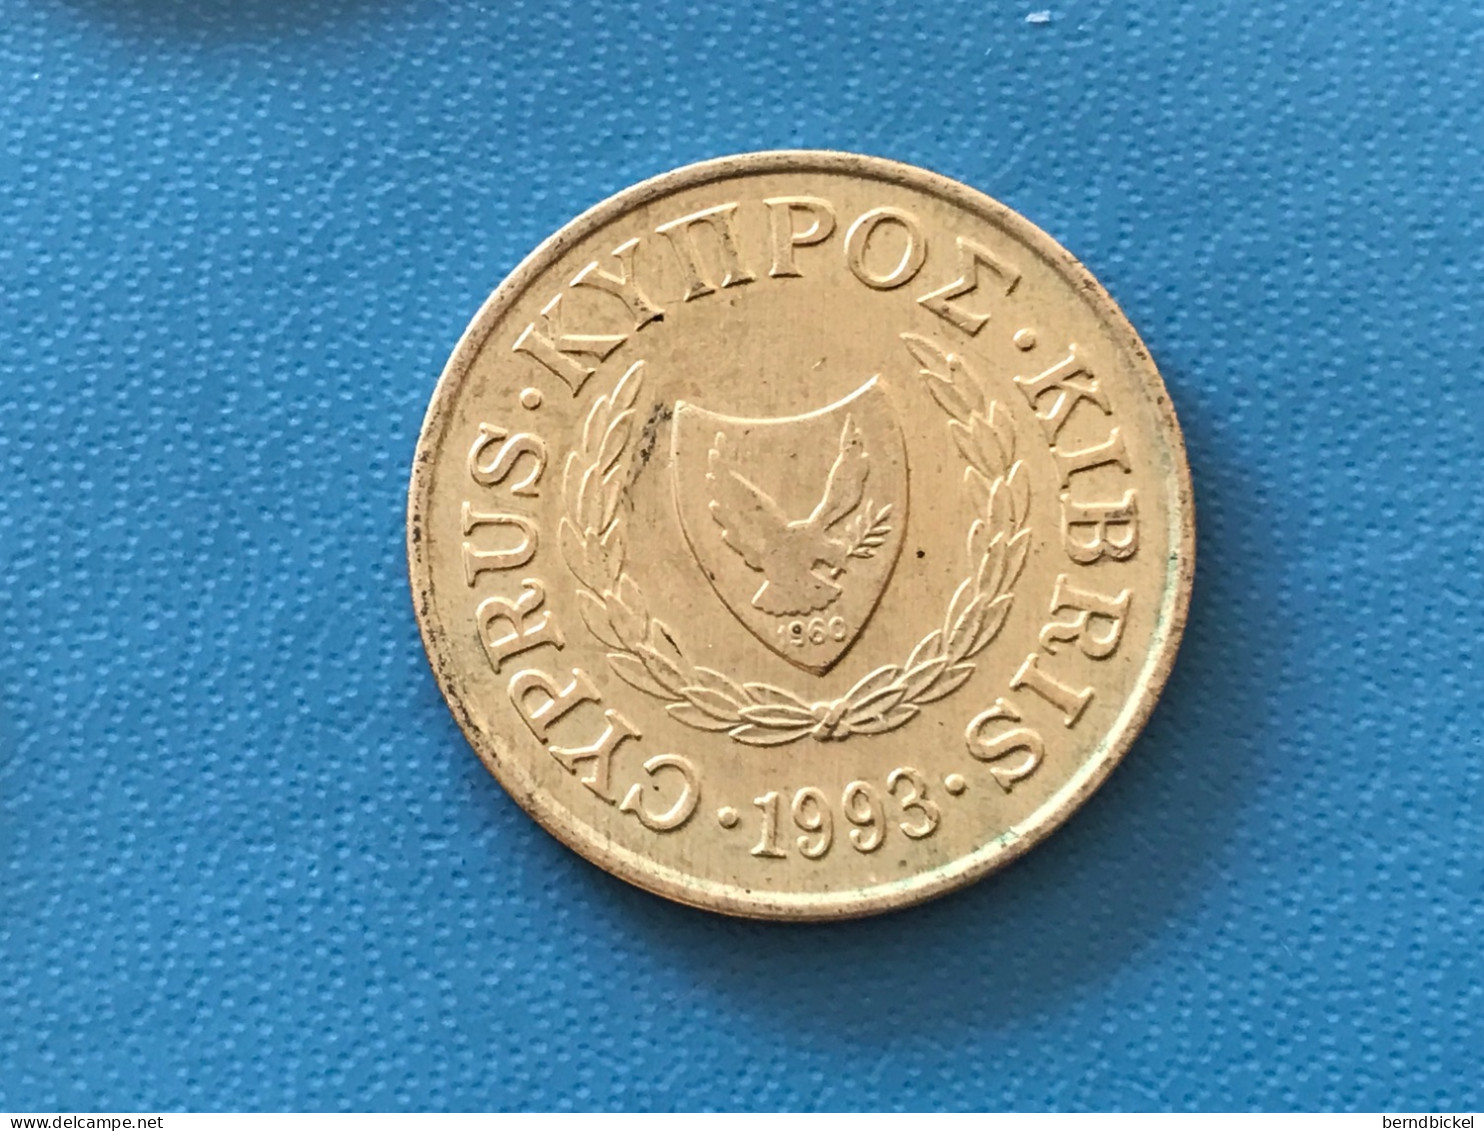 Münze Münzen Umlaufmünze Zypern 5 Cent 1993 - Chypre